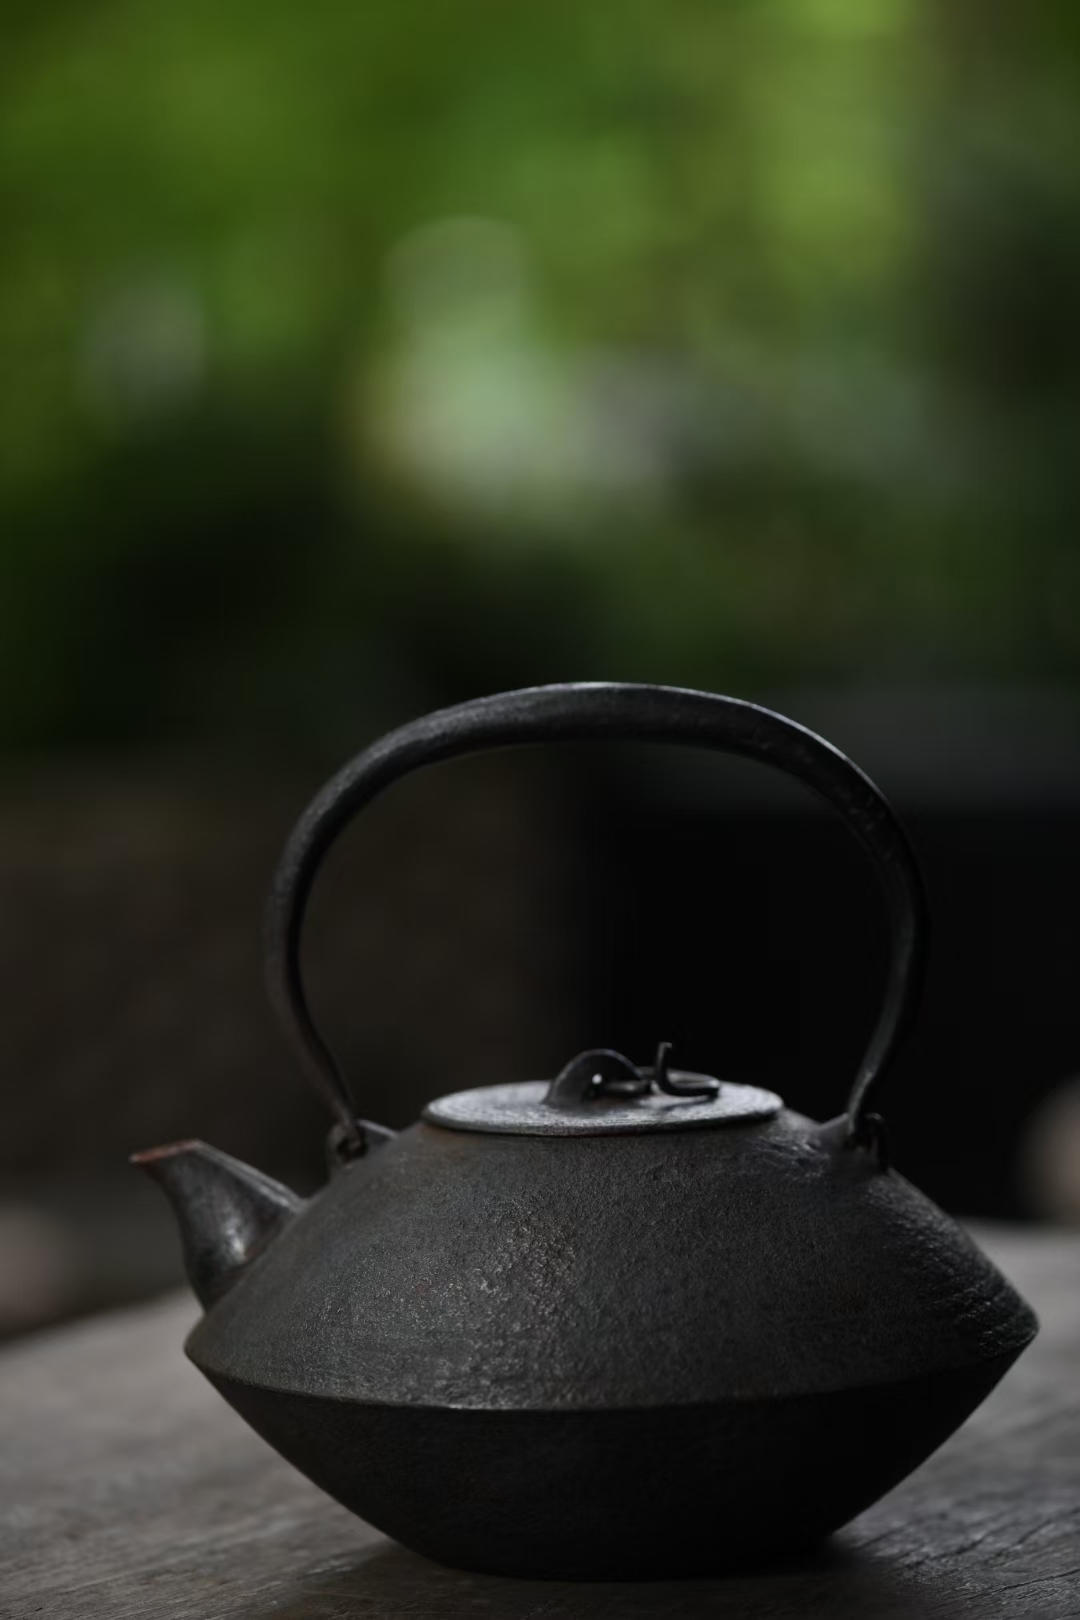 【精品南部】日本 南部釜定 算珠形 老铁壶 小嘴好玩,出水佳。 铁质佳,个头也不大